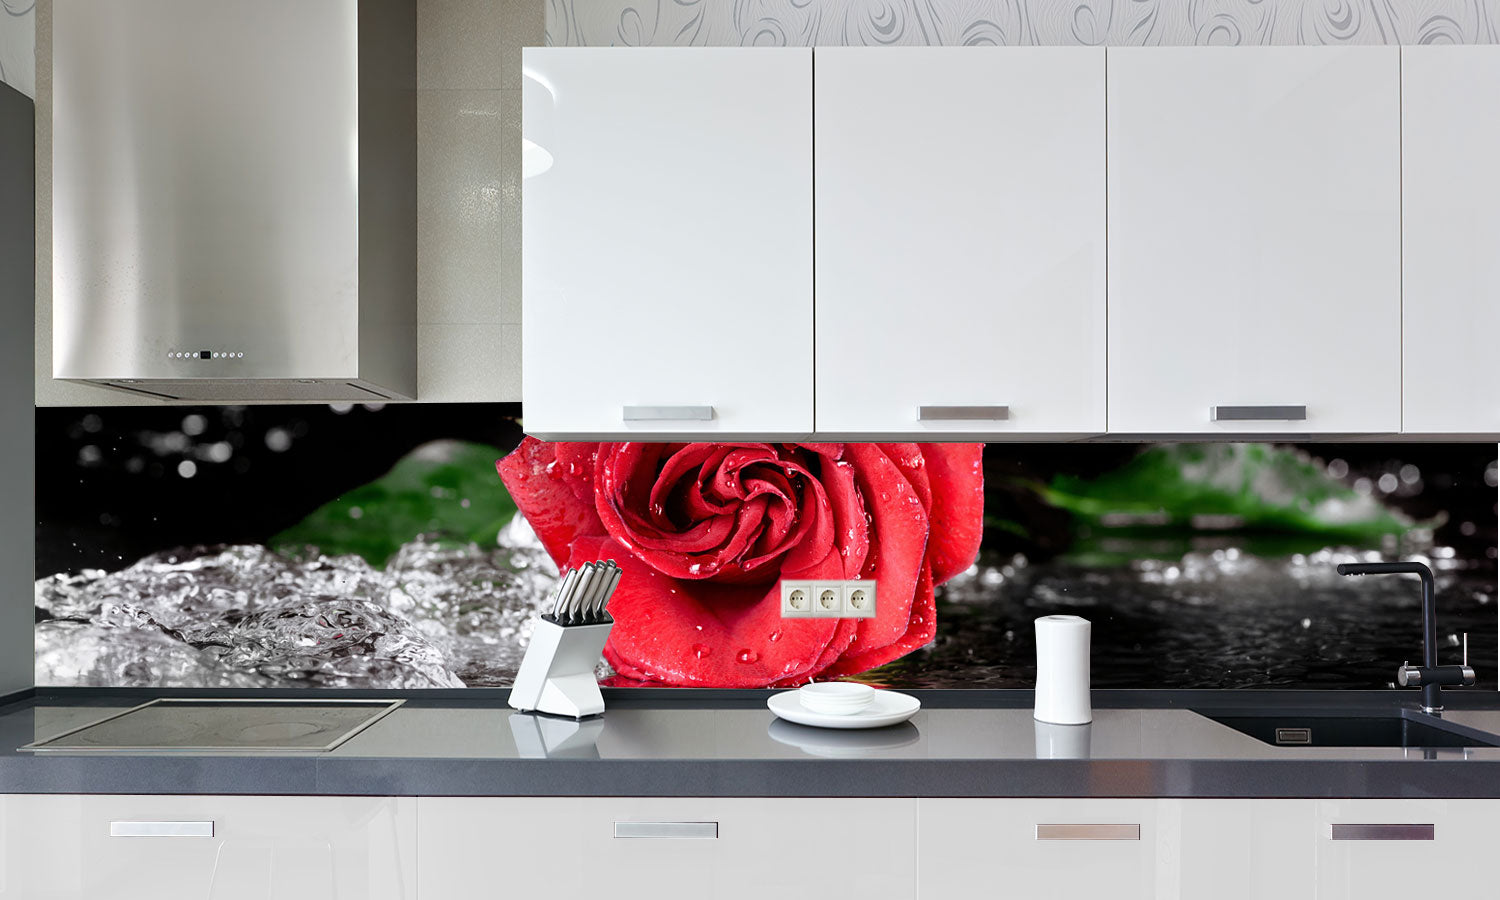 Stakla za kuhinje   Red rose with water drops -  Stakleni / PVC ploče / Pleksiglas -  sa printom za kuhinju, Zidne obloge PKU278